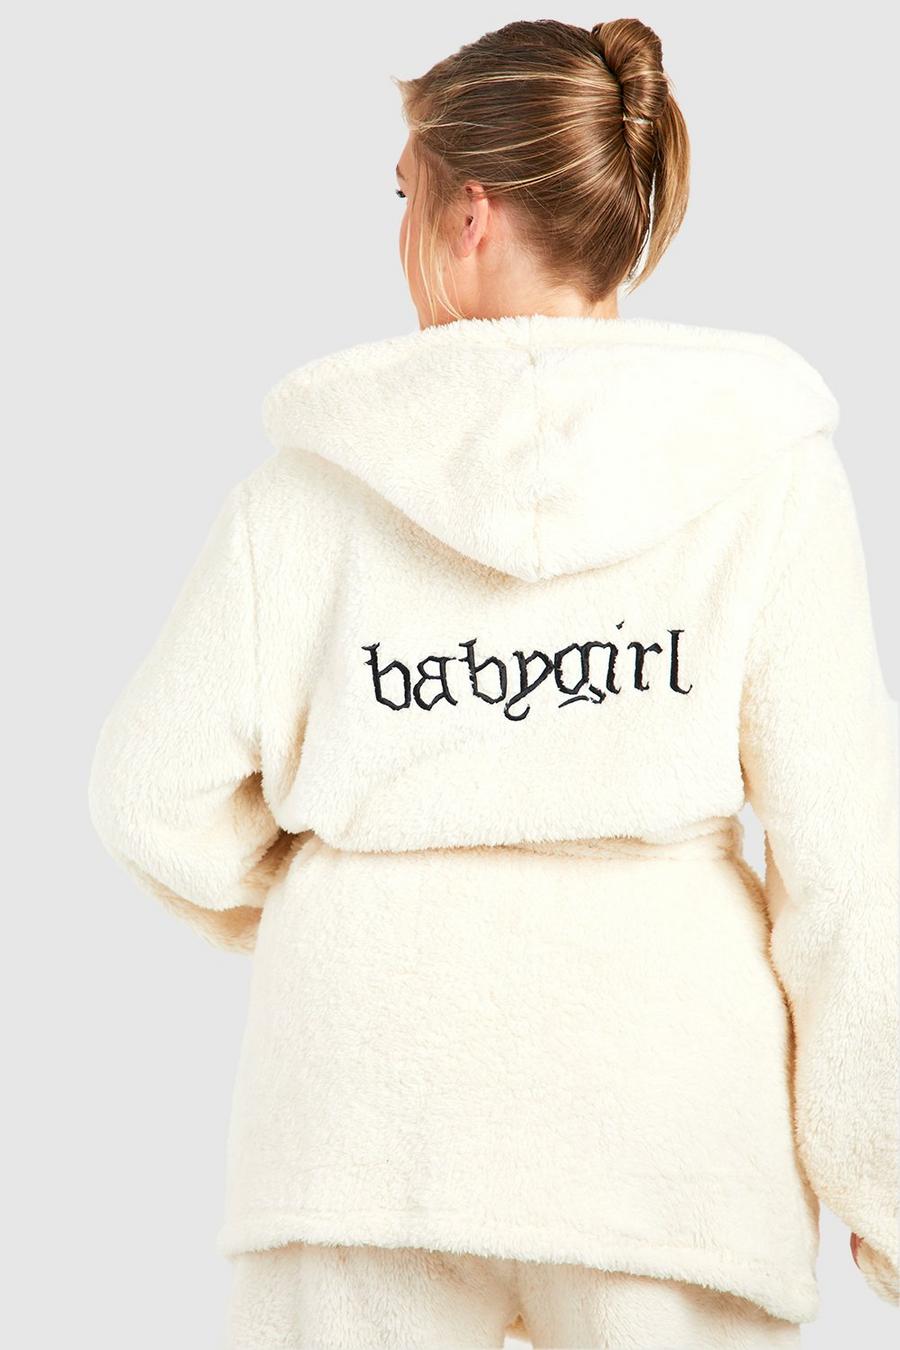 Grande taille - Robe de chambre courte en polaire à slogan Baby Girl, Cream weiß